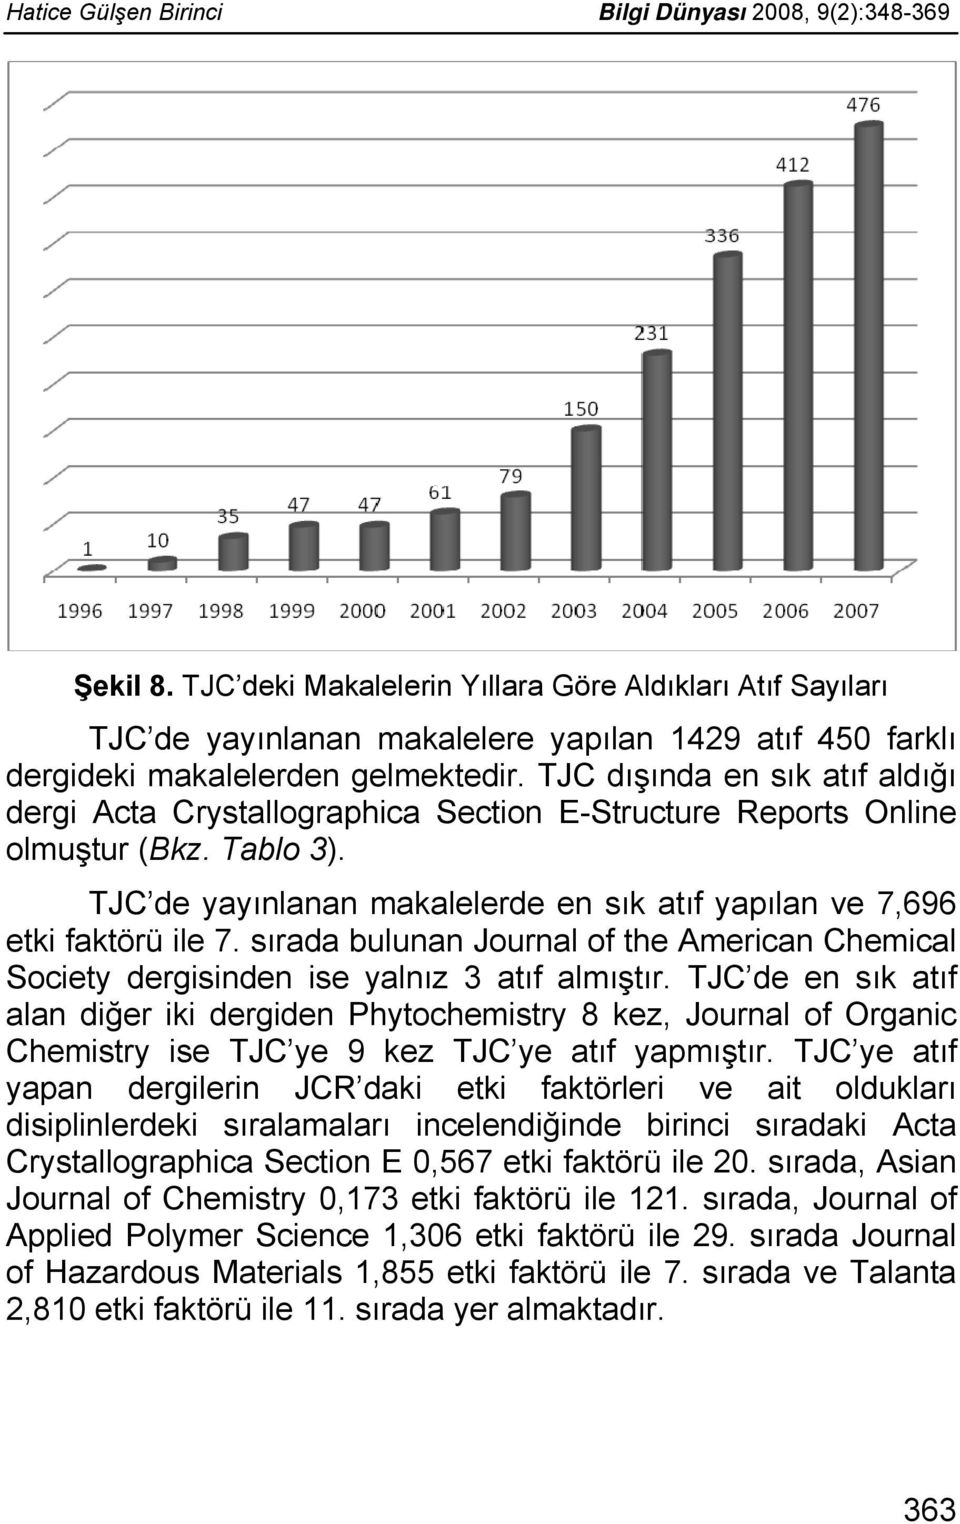 TJC dışında en sık atıf aldığı dergi Acta Crystallographica Section E-Structure Reports Online olmuştur (Bkz. Tablo 3). TJC de yayınlanan makalelerde en sık atıf yapılan ve 7,696 etki faktörü ile 7.